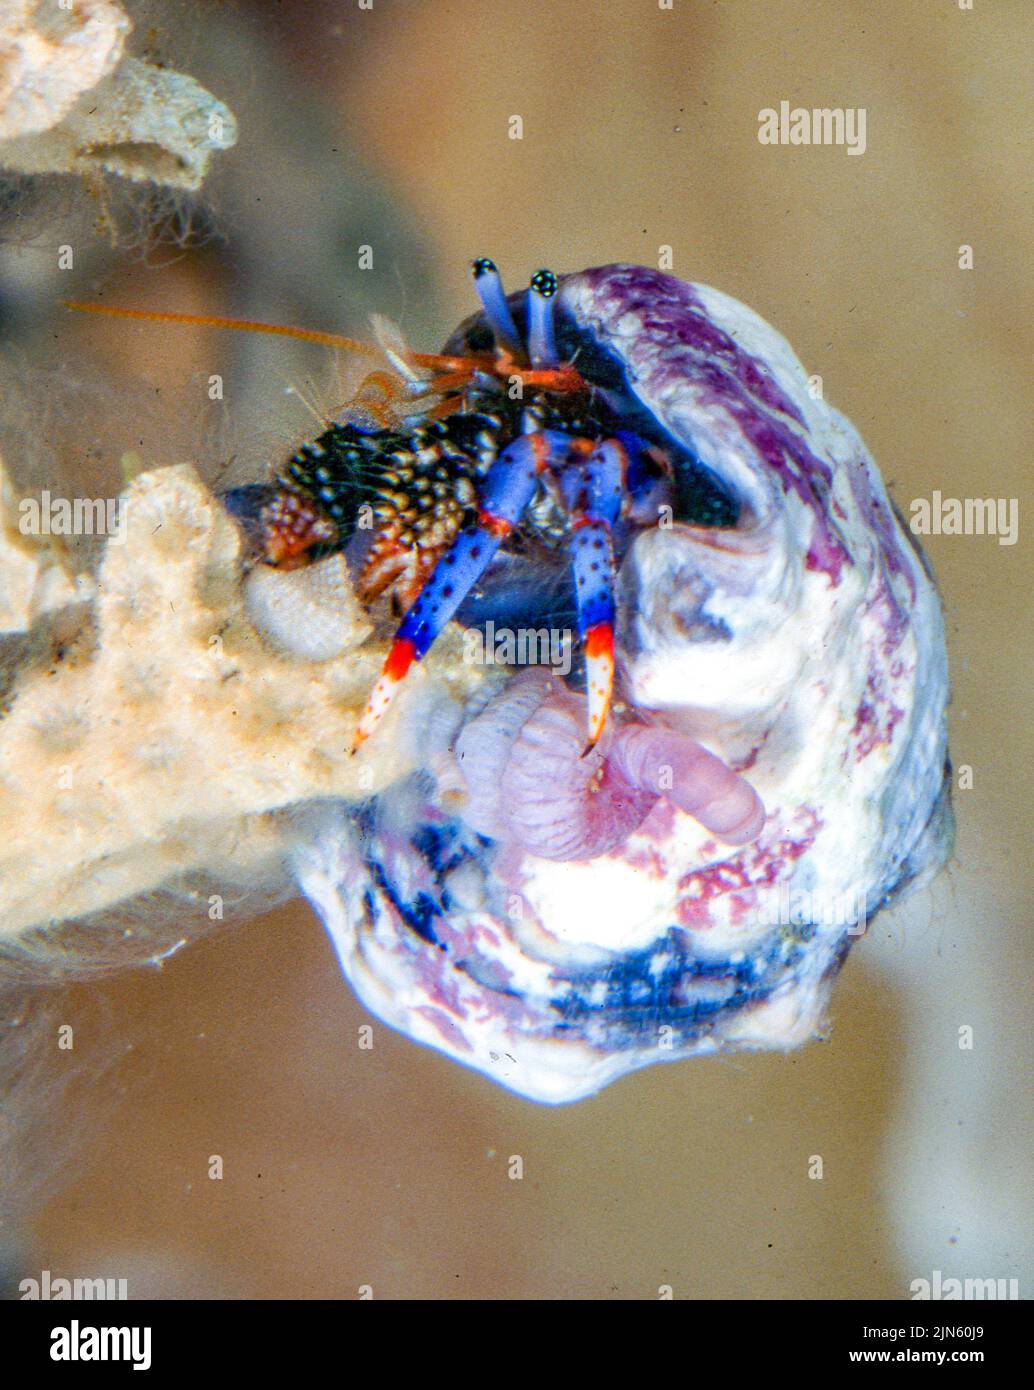 Blue-legged hermit crab (Clibanarius tricolor). Stock Photo